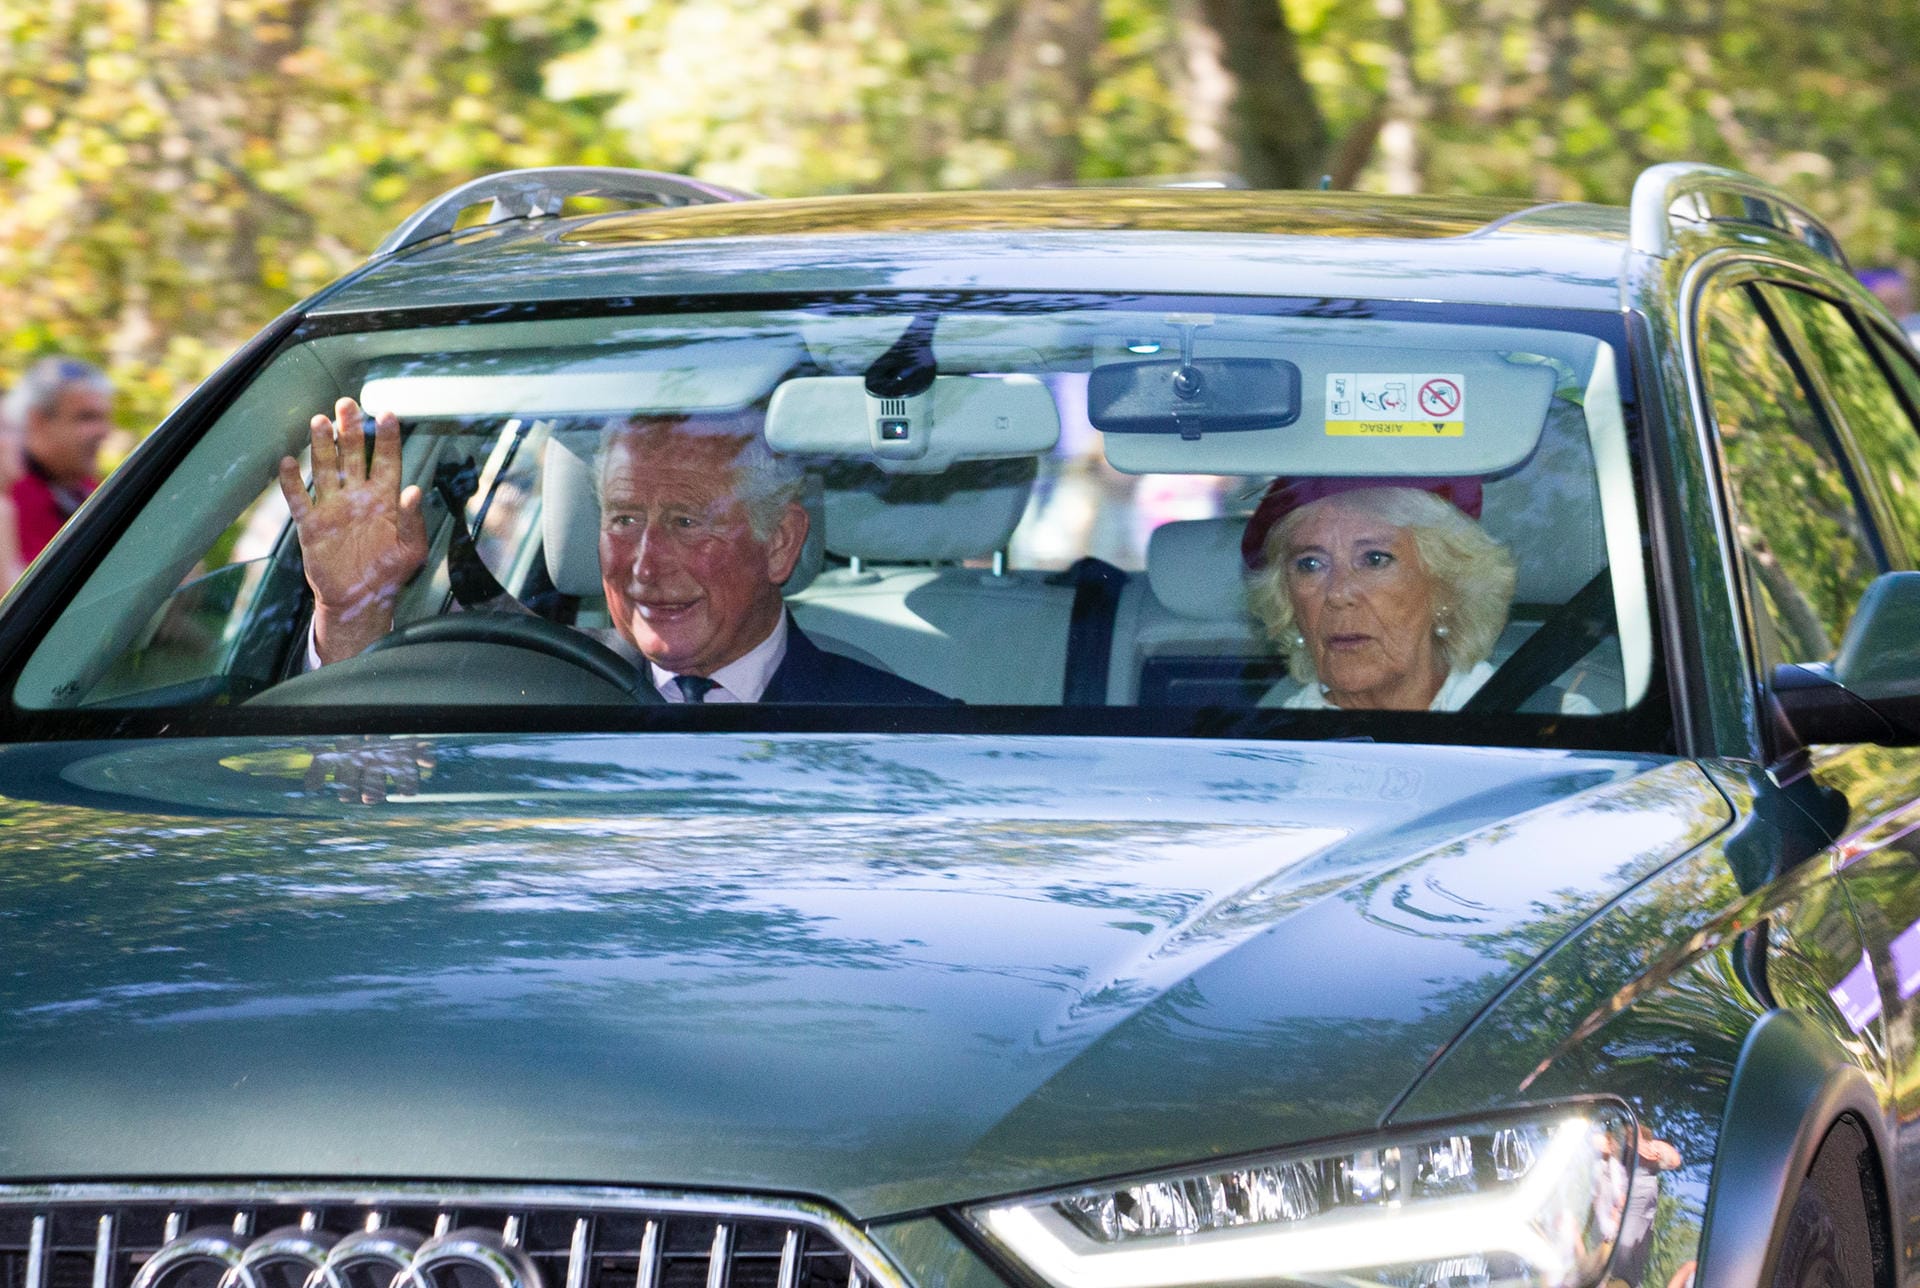 Hinter der Queen im Auto saßen Prinz Charles und Herzogin Camilla.